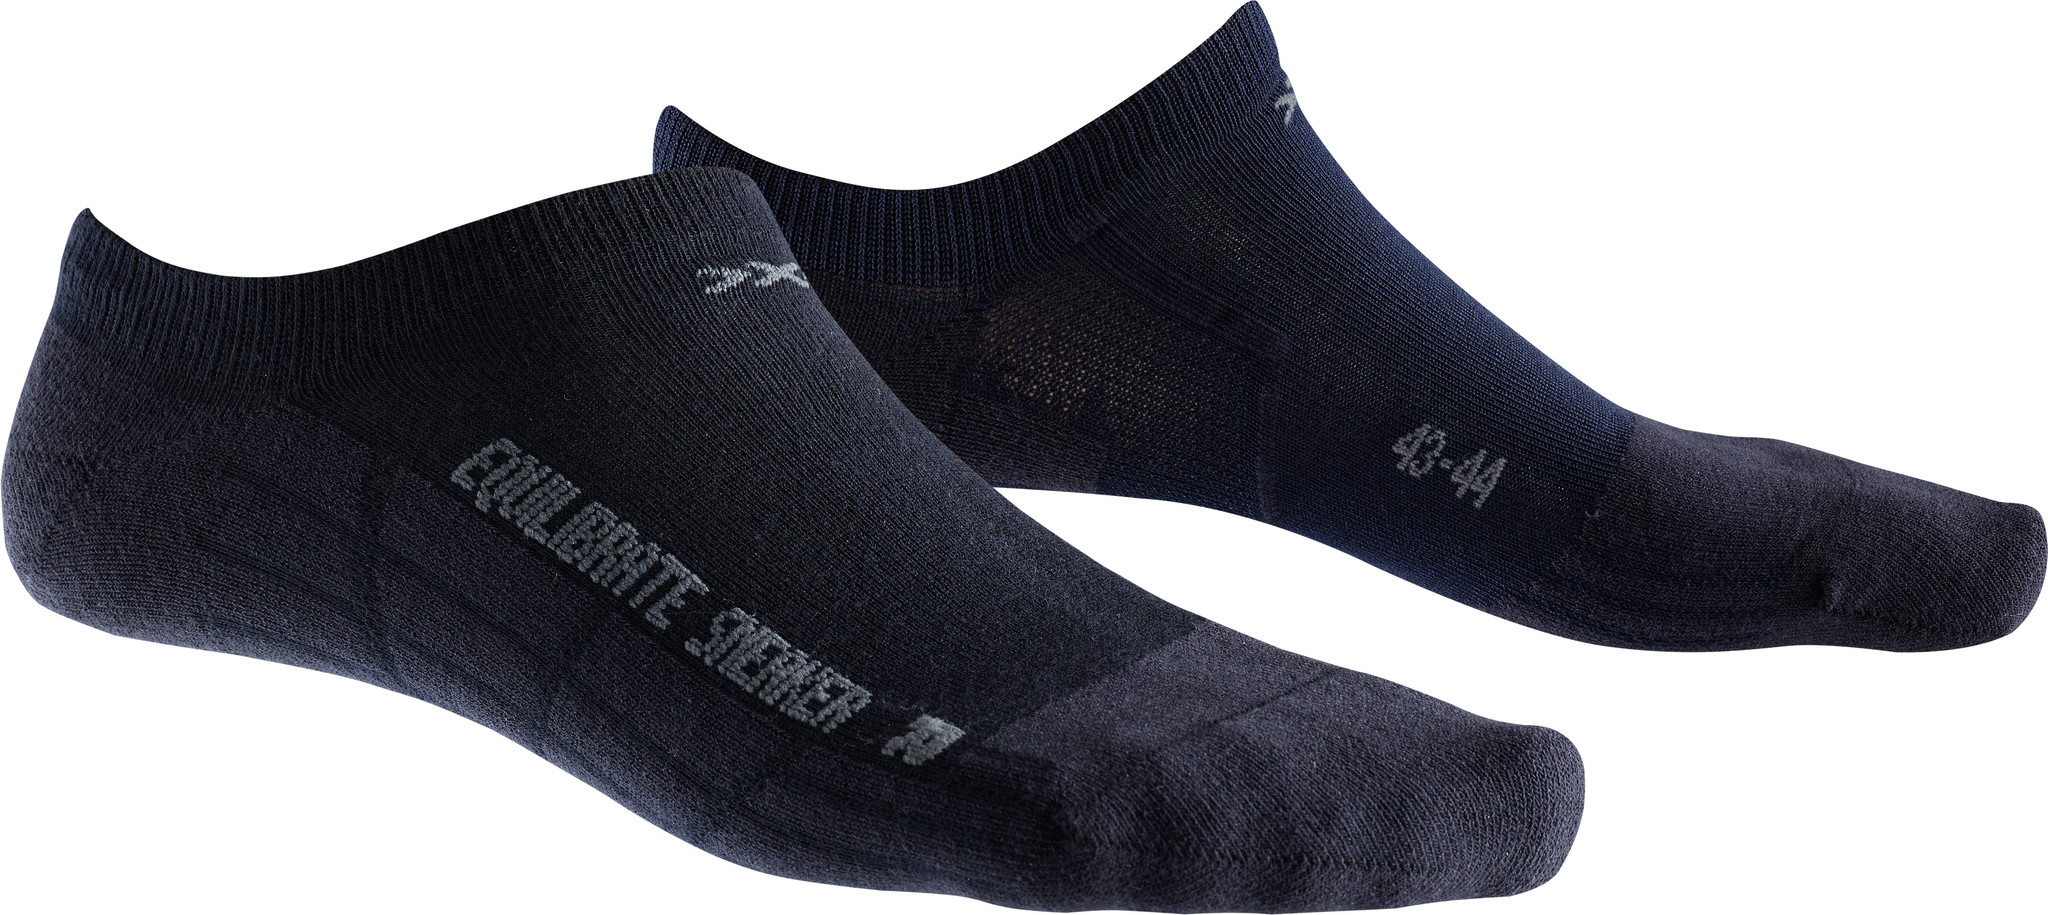 X-SOCKS Socken, Strümpfe Sneaker Equilibrate Marine unisex von Gr. 39 - 46 S17-XS1